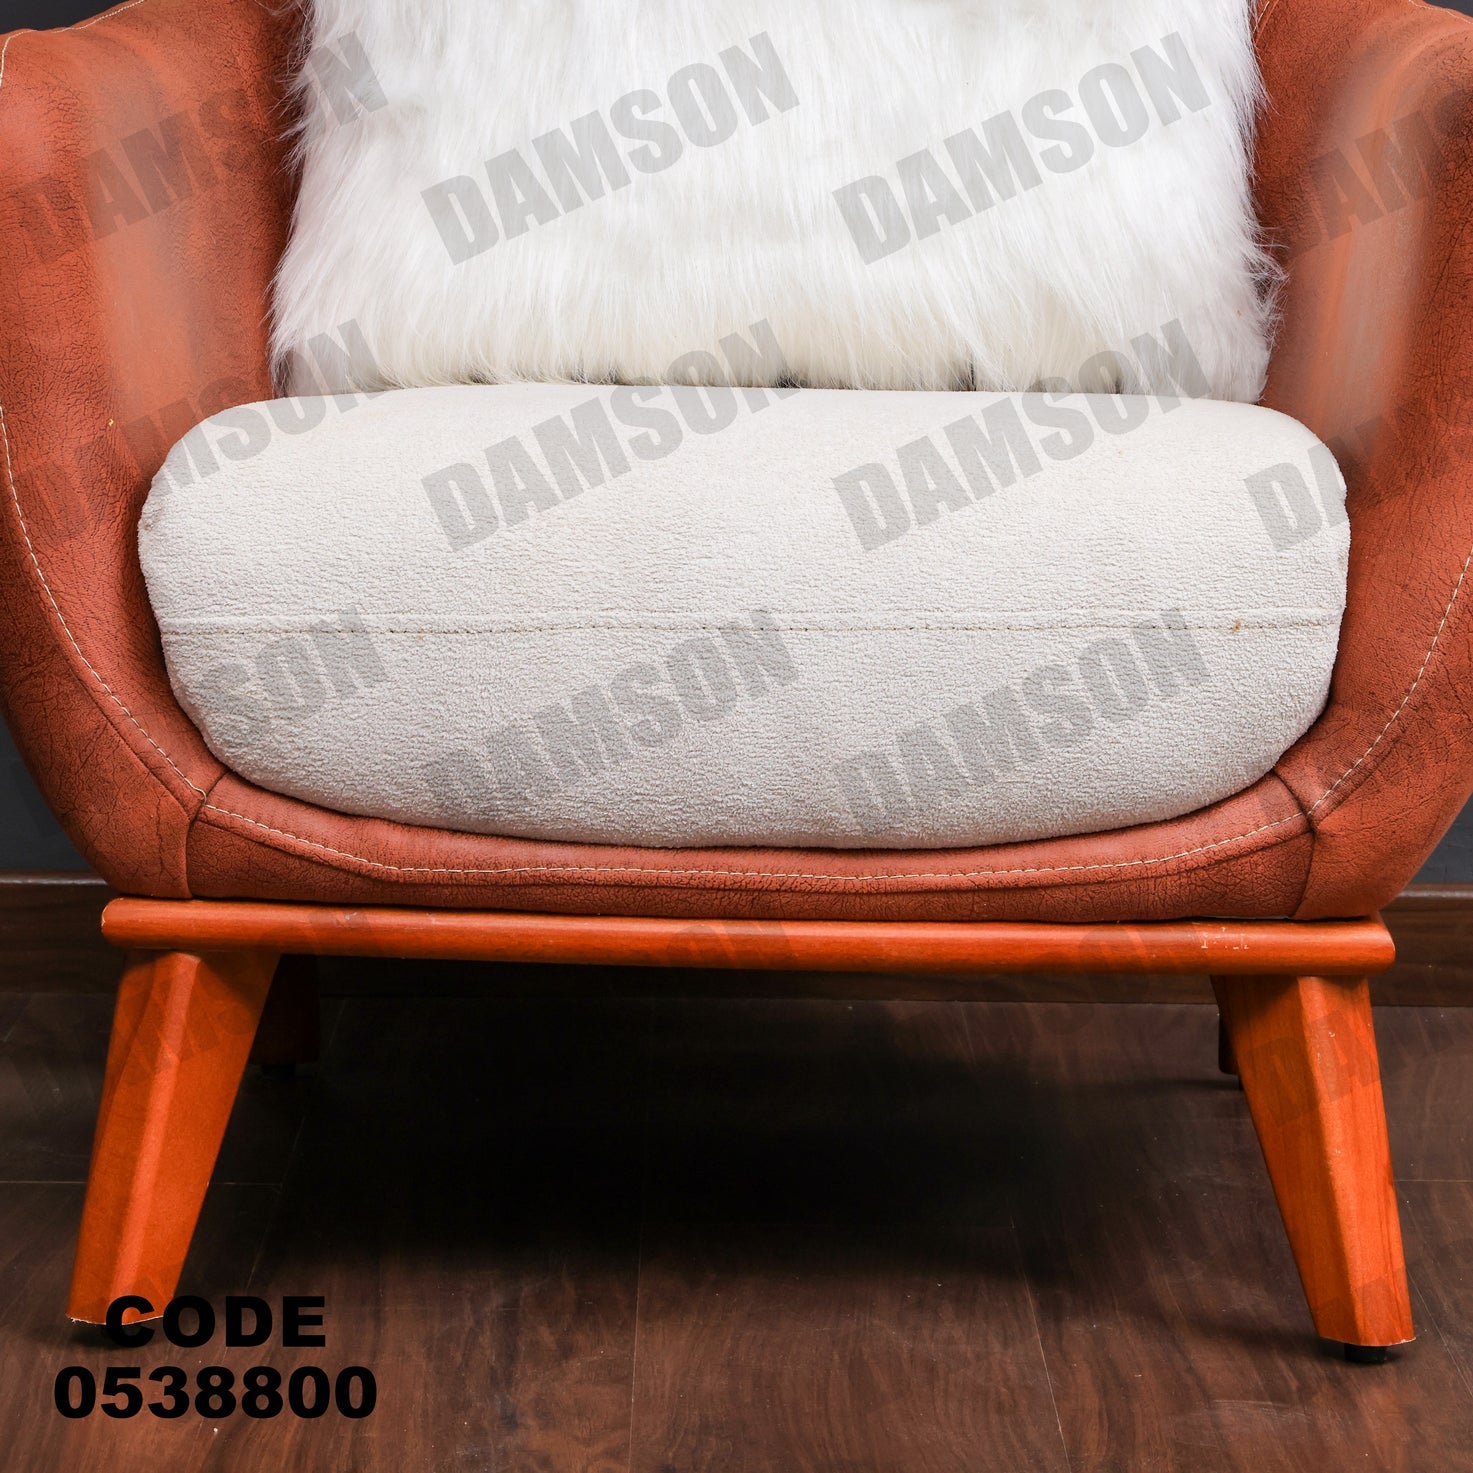 فوتية 1-388 - Damson Furnitureفوتية 1-388